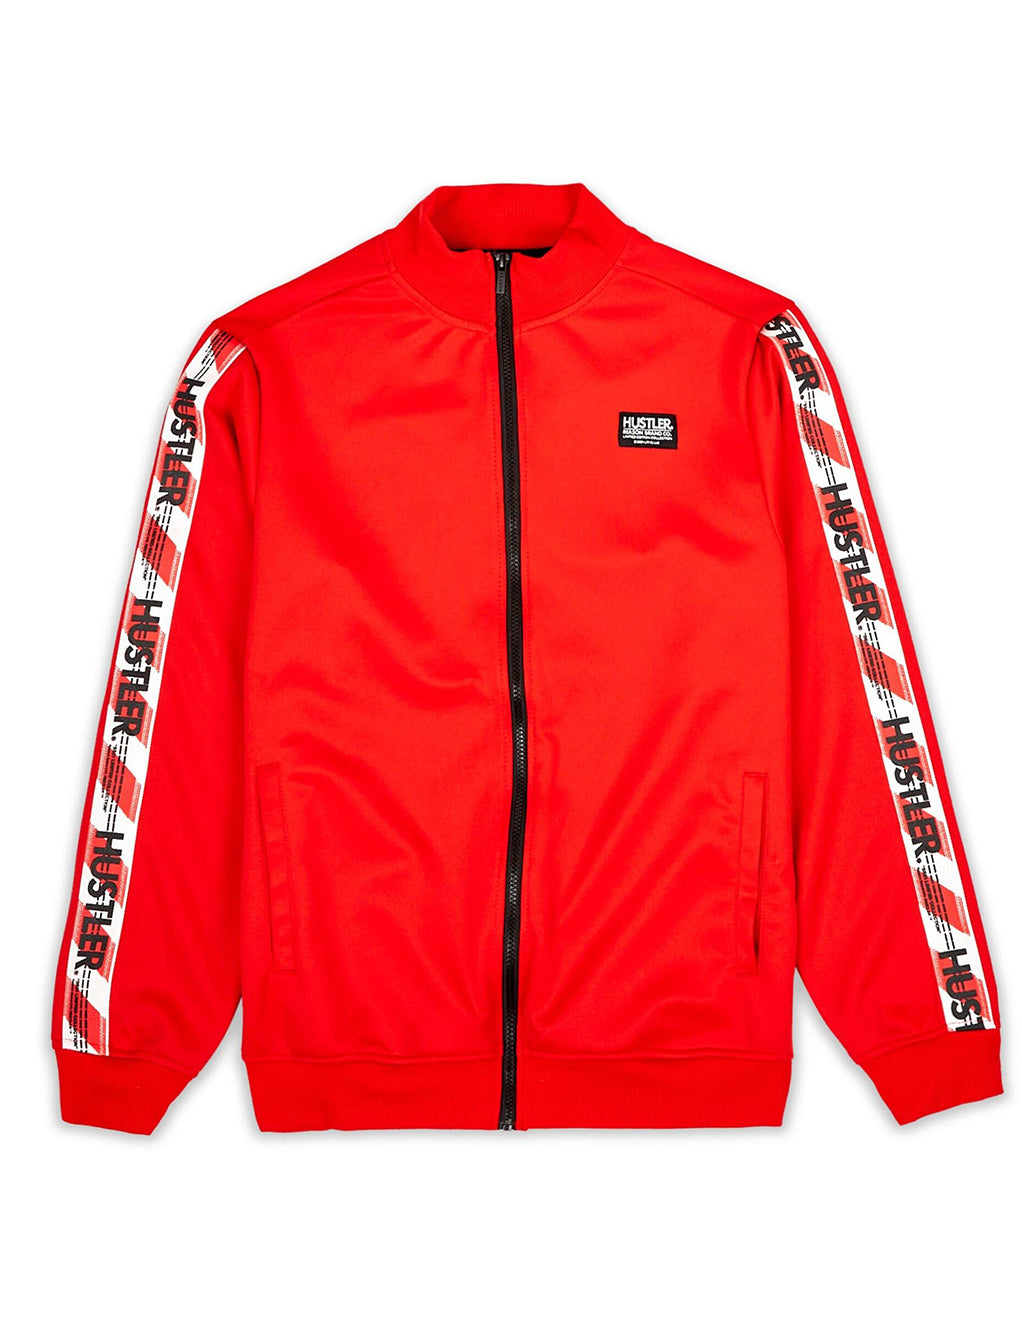 HUSTLER® Track Jacket- Red- Front